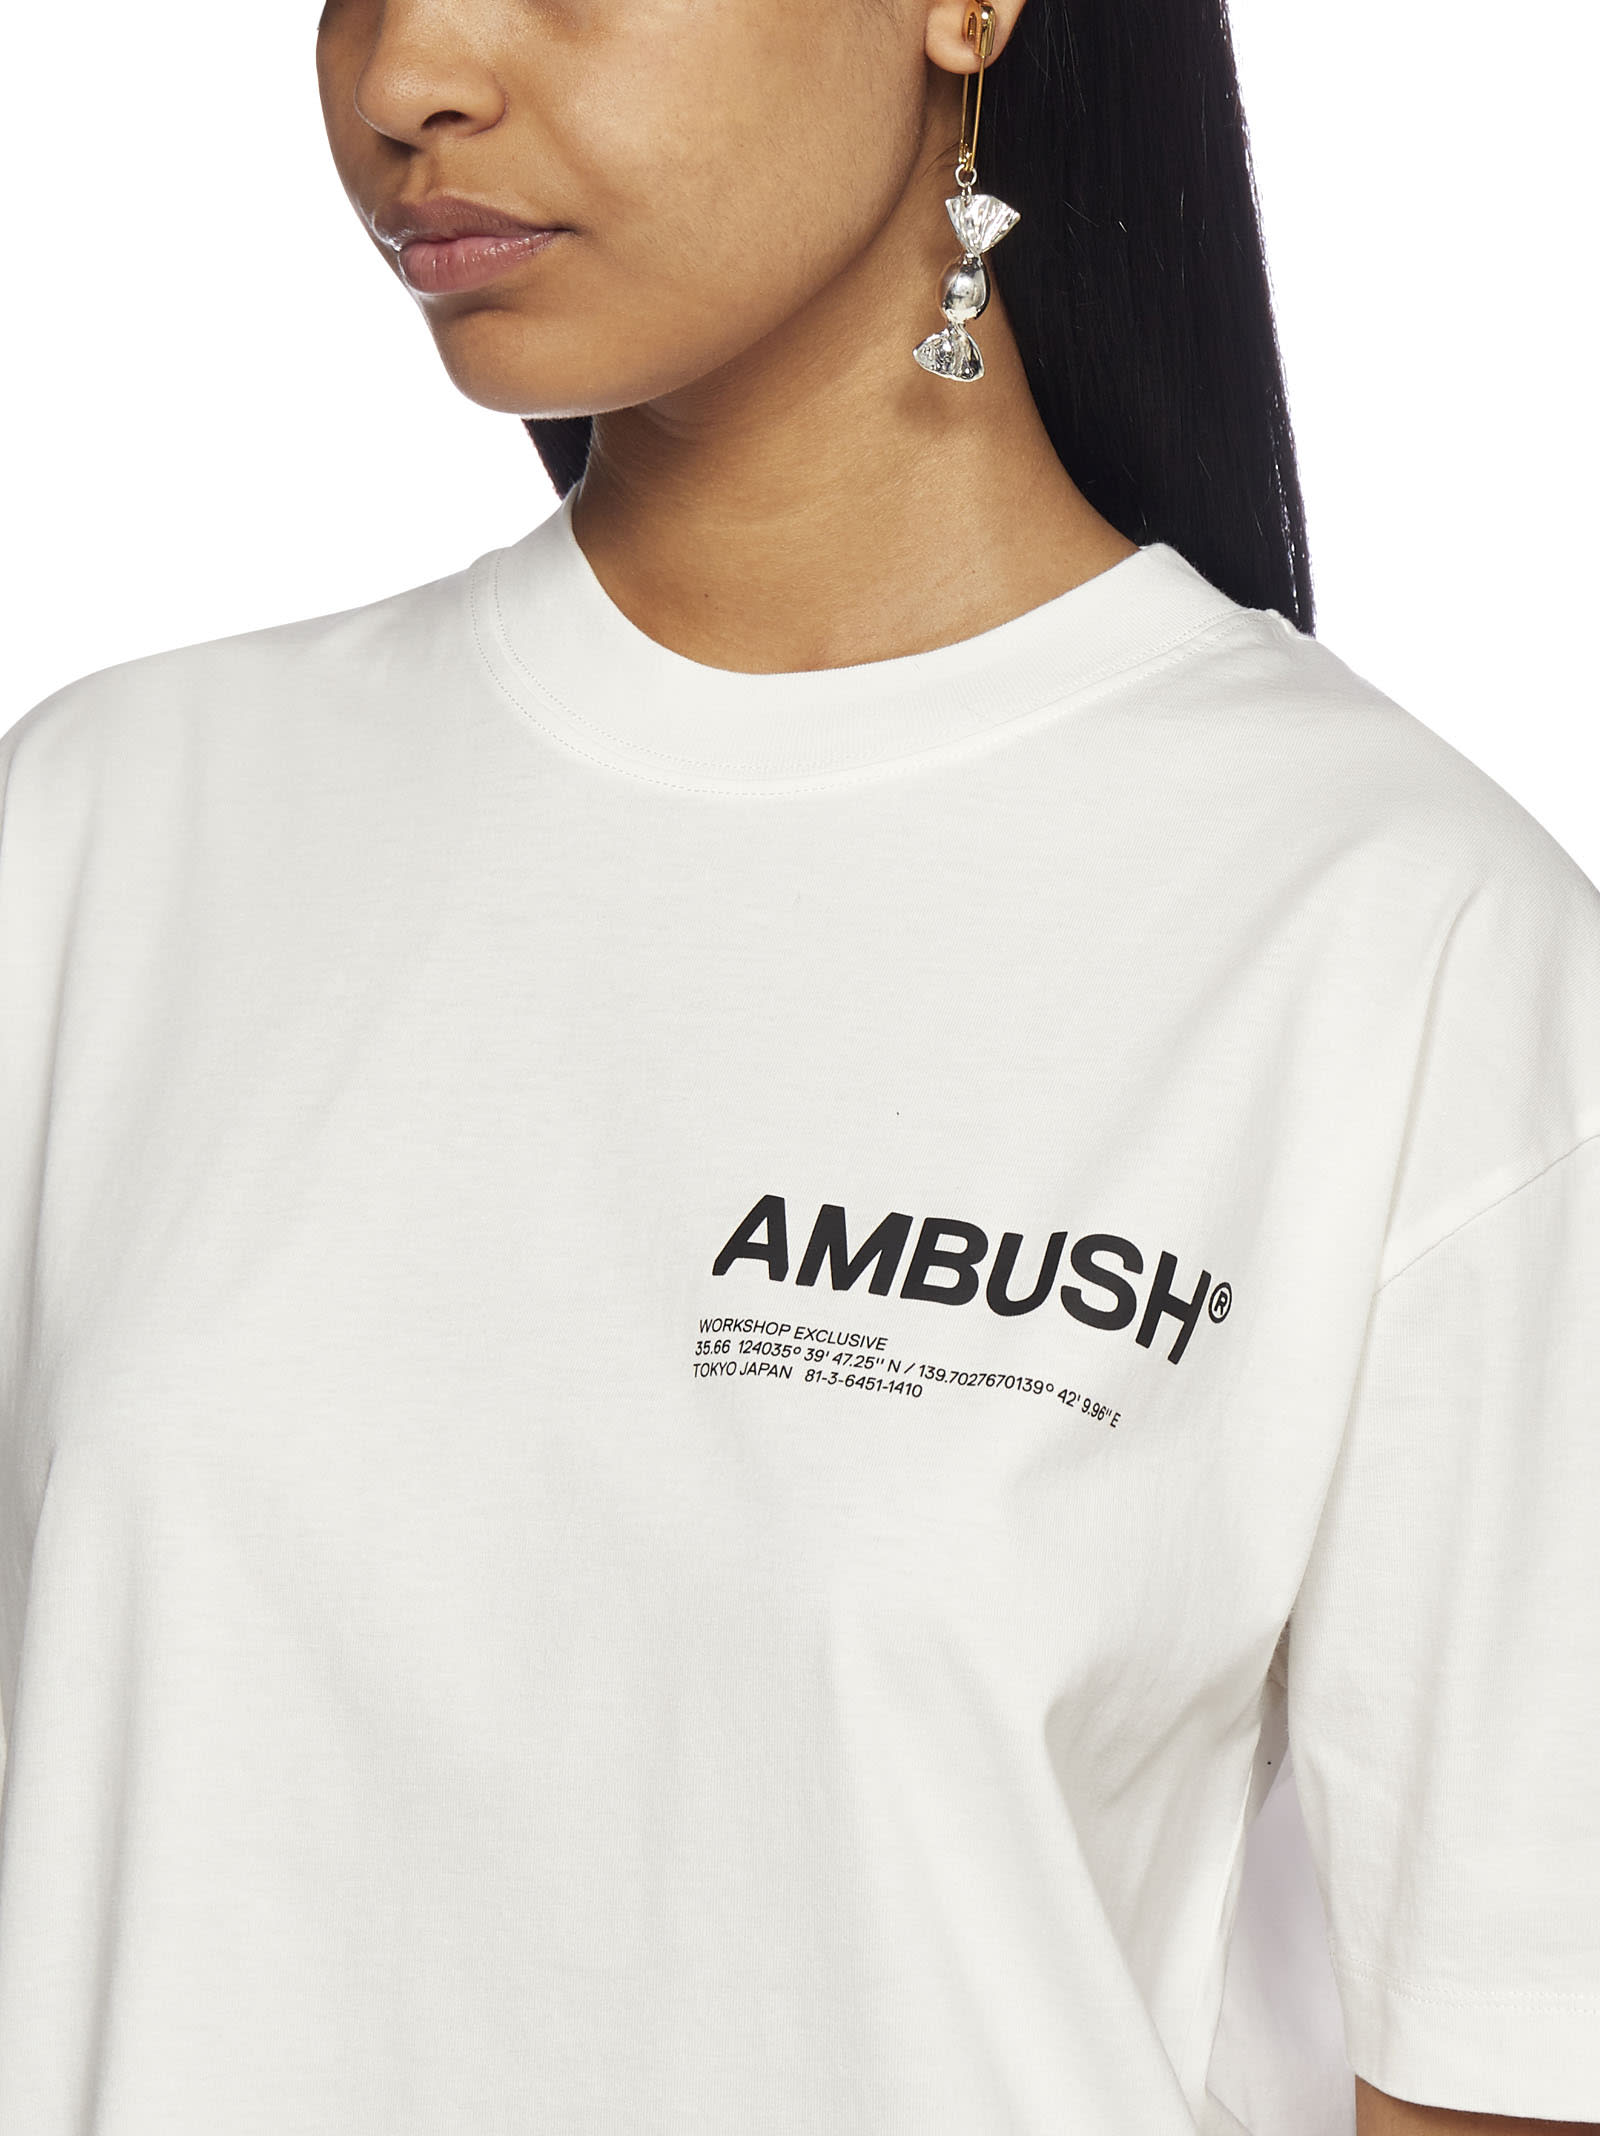 AMBUSH EARRINGS,BWOD015F21MET001 -7200